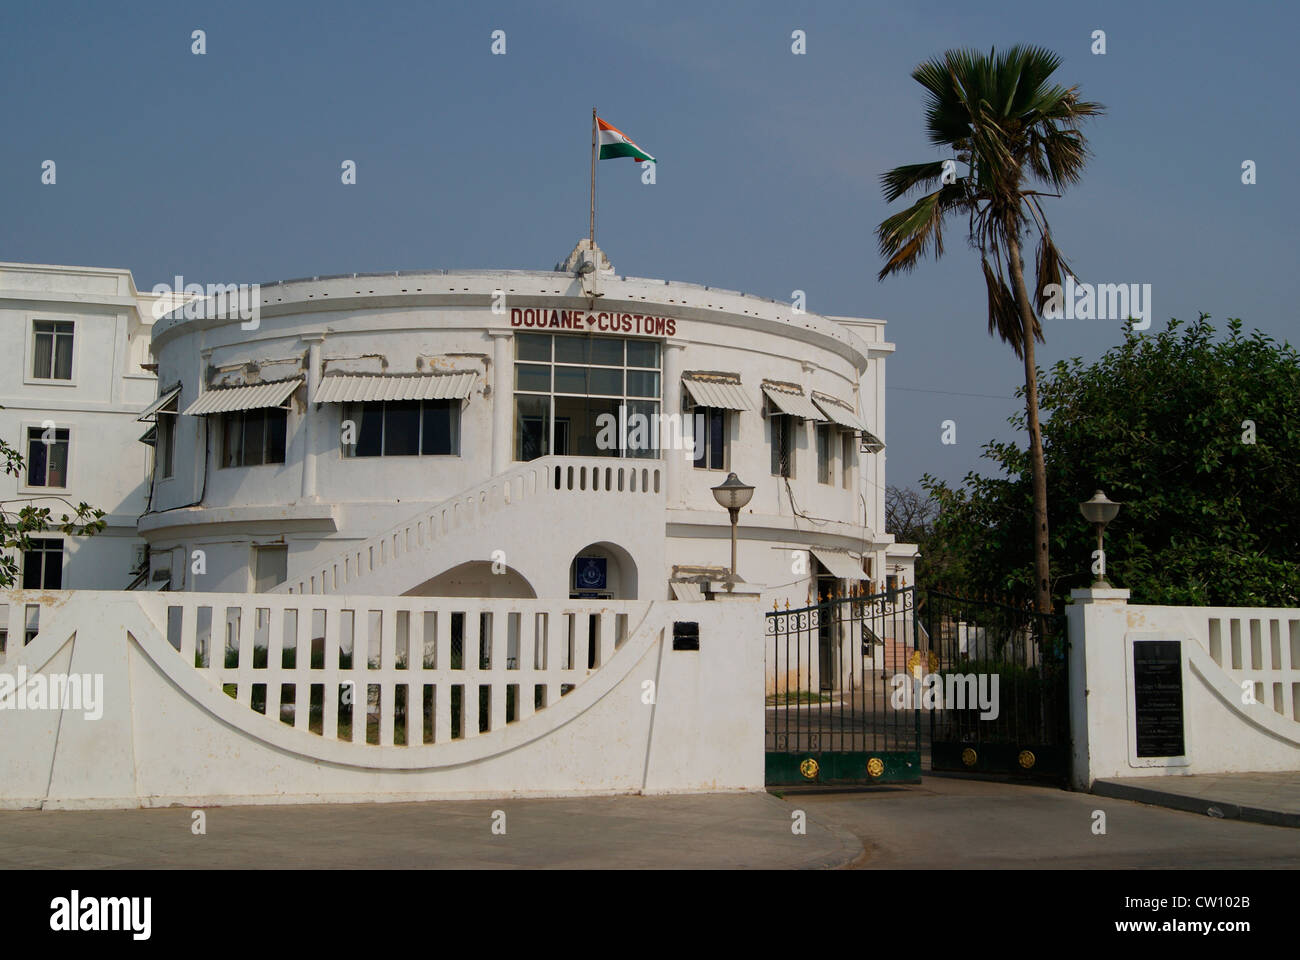 Bureau de douane Douane bâtiment construit par l'anglais Pondicherry Puducherry Tamil Nadu Inde.Une touche d'architecture coloniale Française Banque D'Images